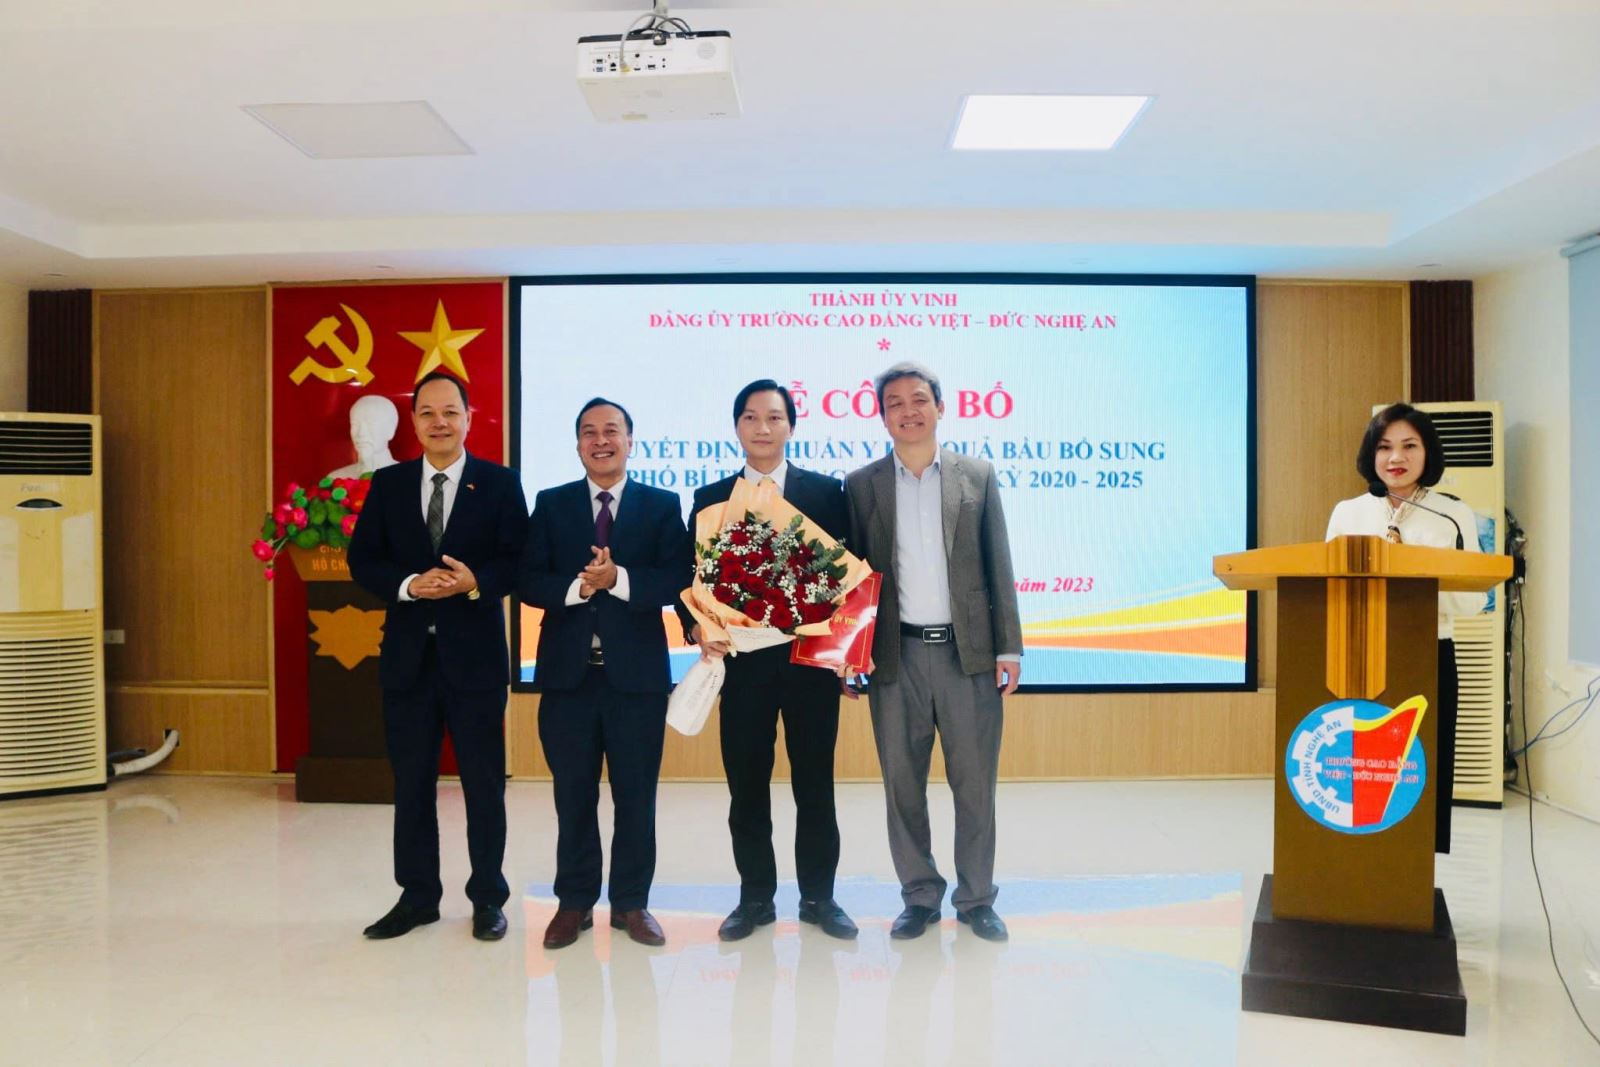 Lễ công bố và trao Quyết định chuẩn y kết quả bầu Phó Bí thư Đảng ủy Trường Cao đẳng Việt – Đức Nghệ An, nhiệm kỳ 2020 – 2025